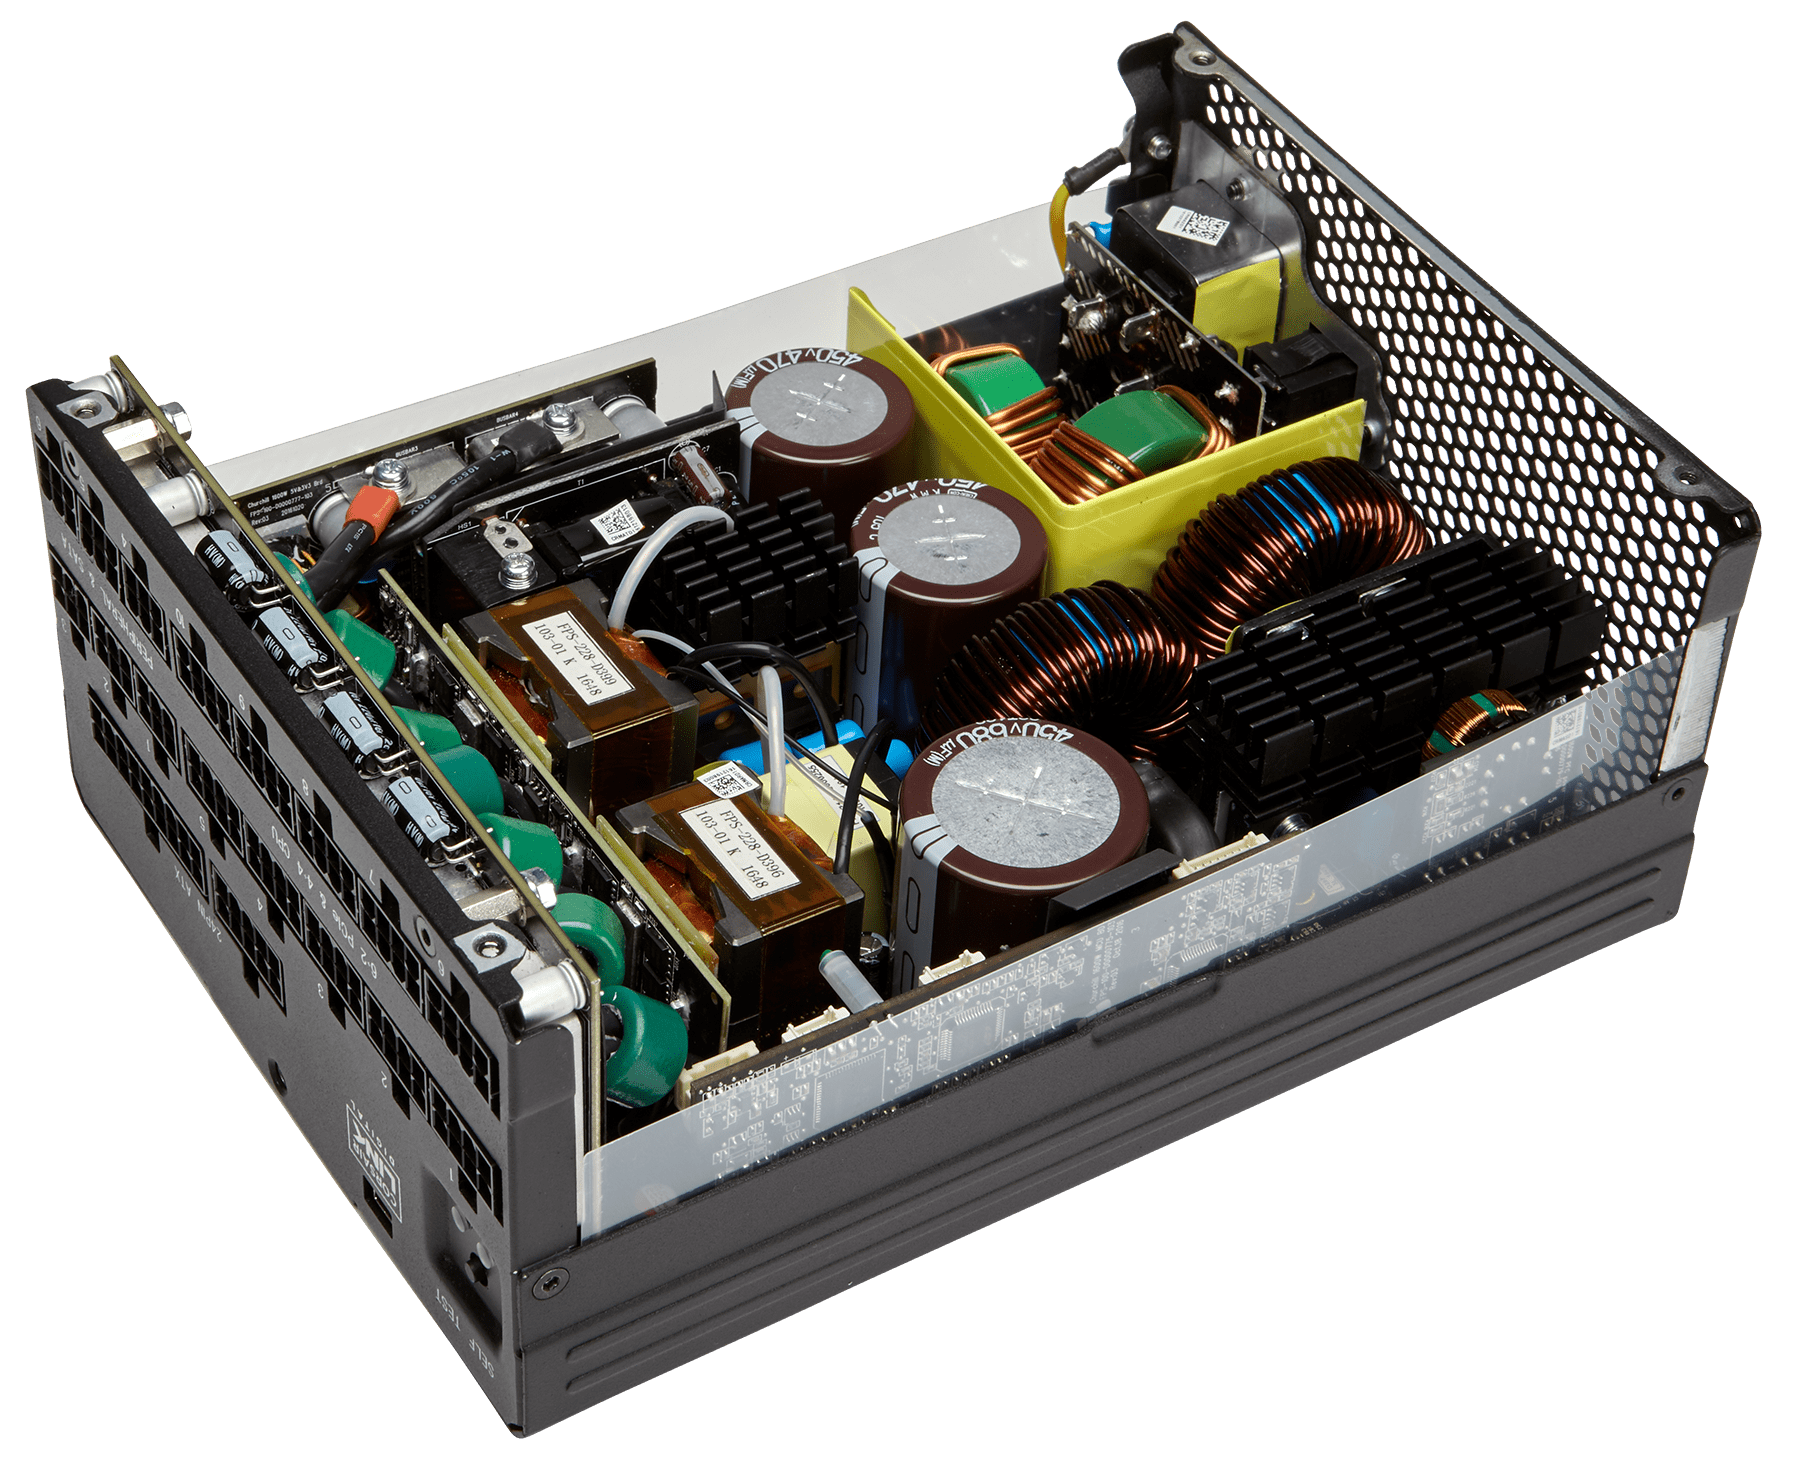 AX1600i Digital ATX Power Supply — 1600 Watt Fully-Modular PSU (JP)